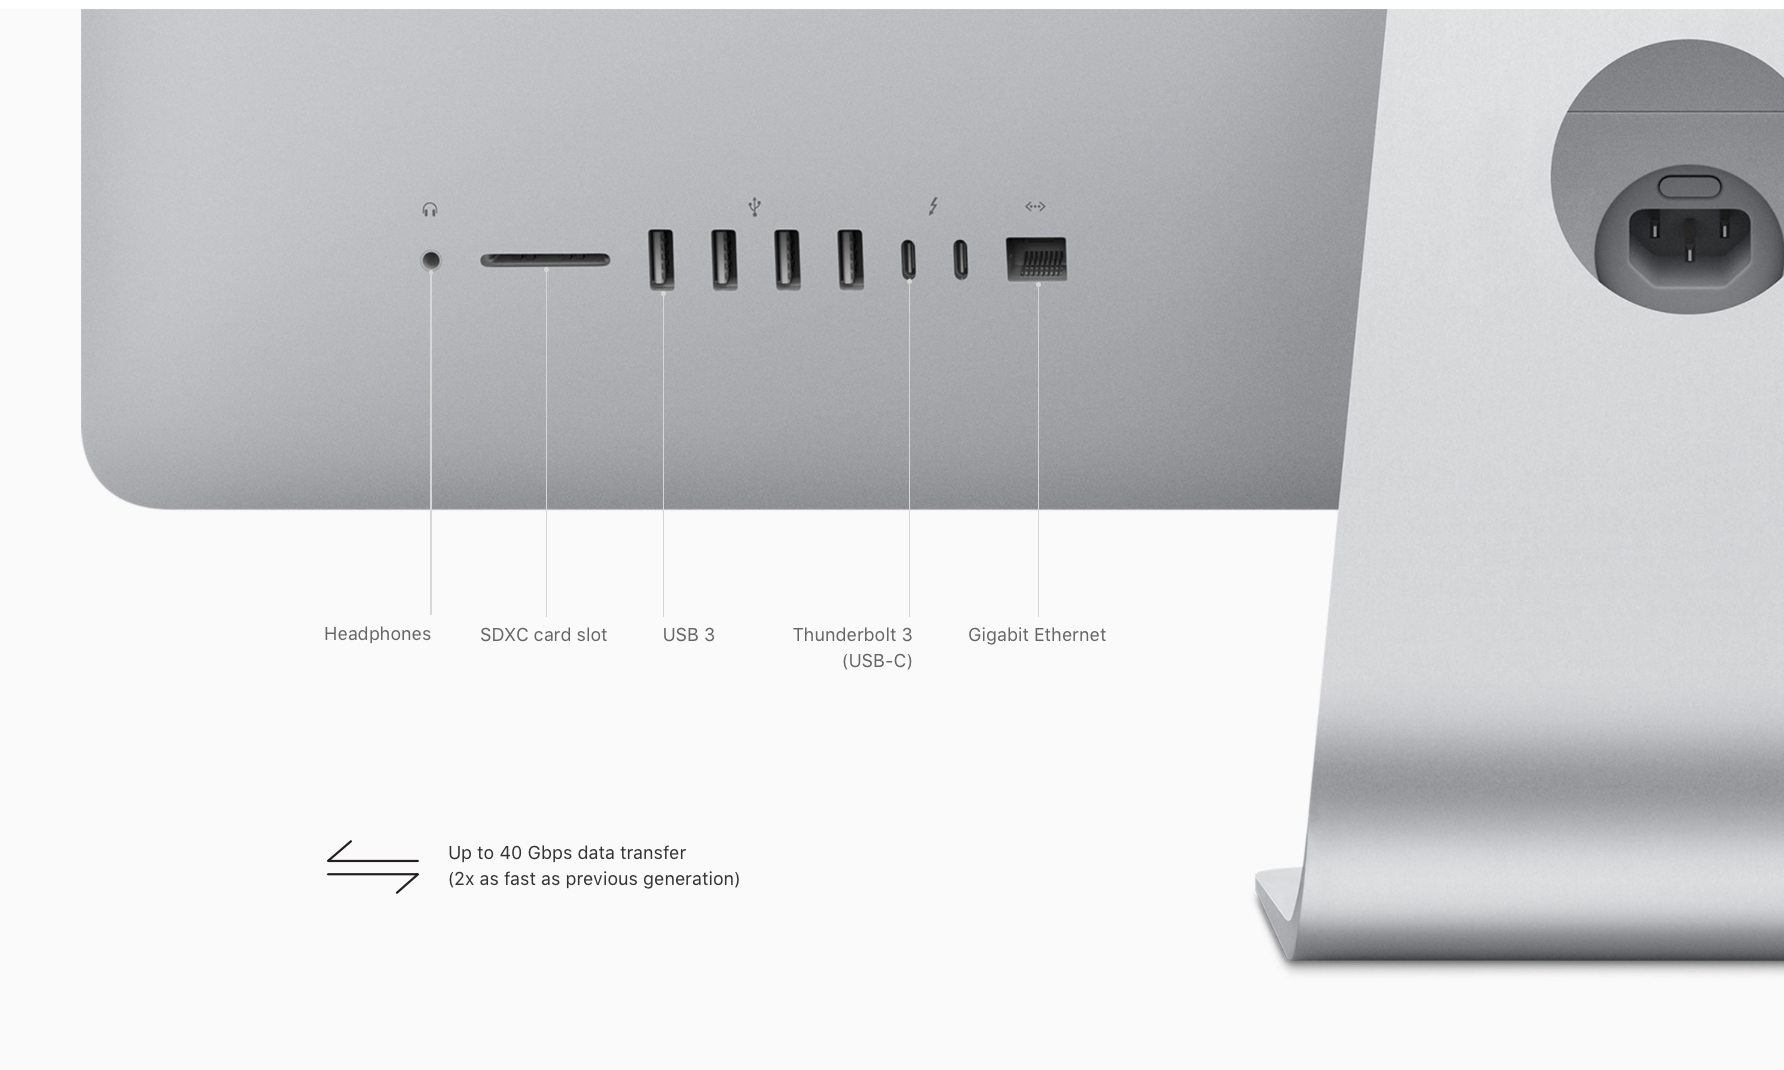 iMac 21.5 inch 2017 (Retina 4K) - 3.0GHZ Quad Core i5 - 8GB - 1TB SSD Storage